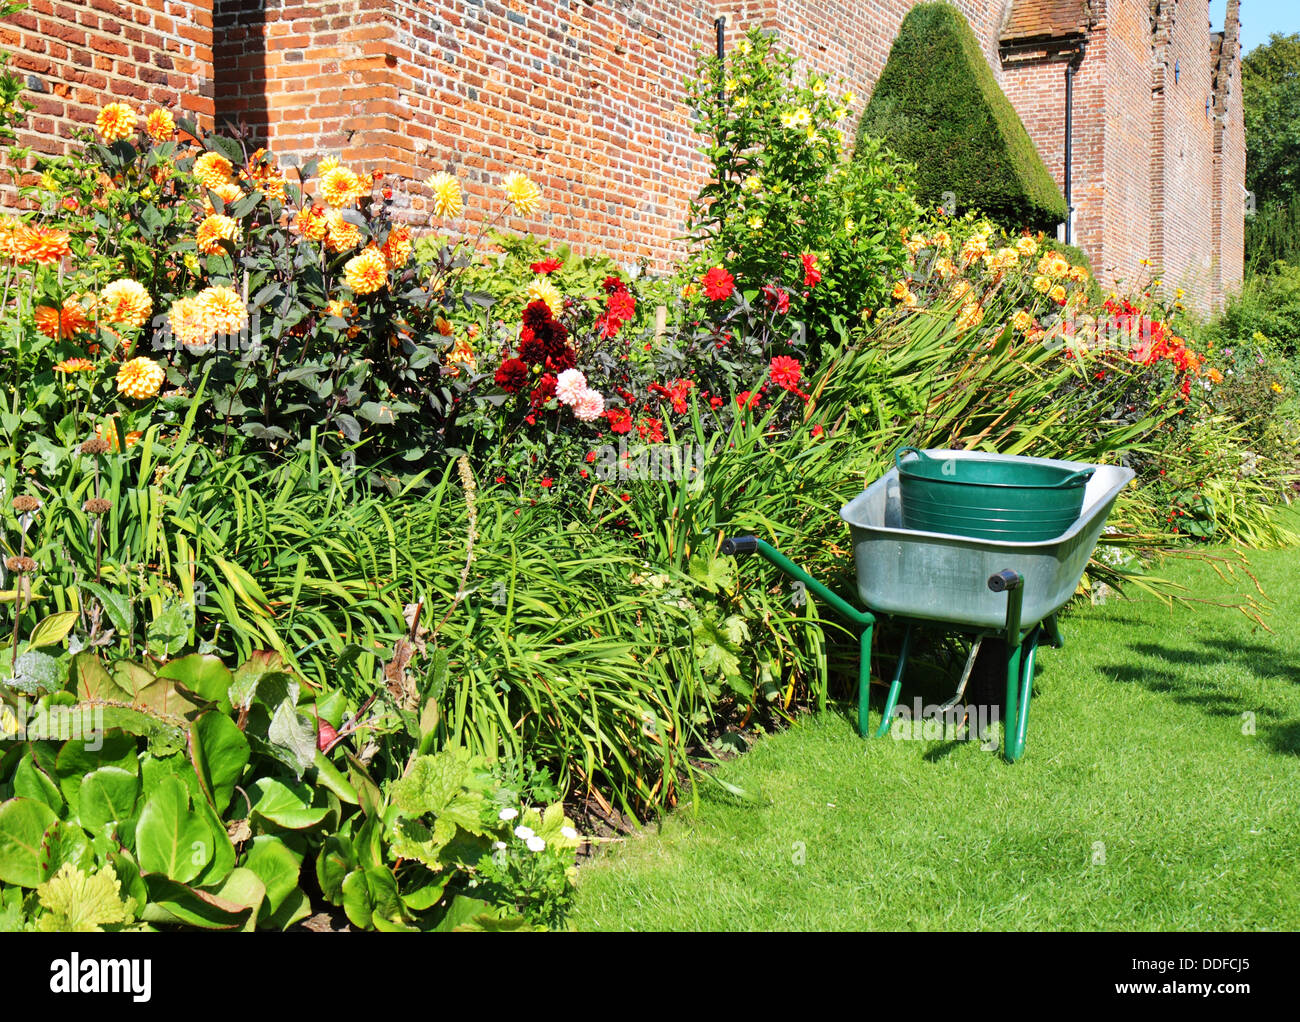 Schubkarre parkte neben einen bunten Rahmen von Sommerblumen in einen englischen Garten Stockfoto